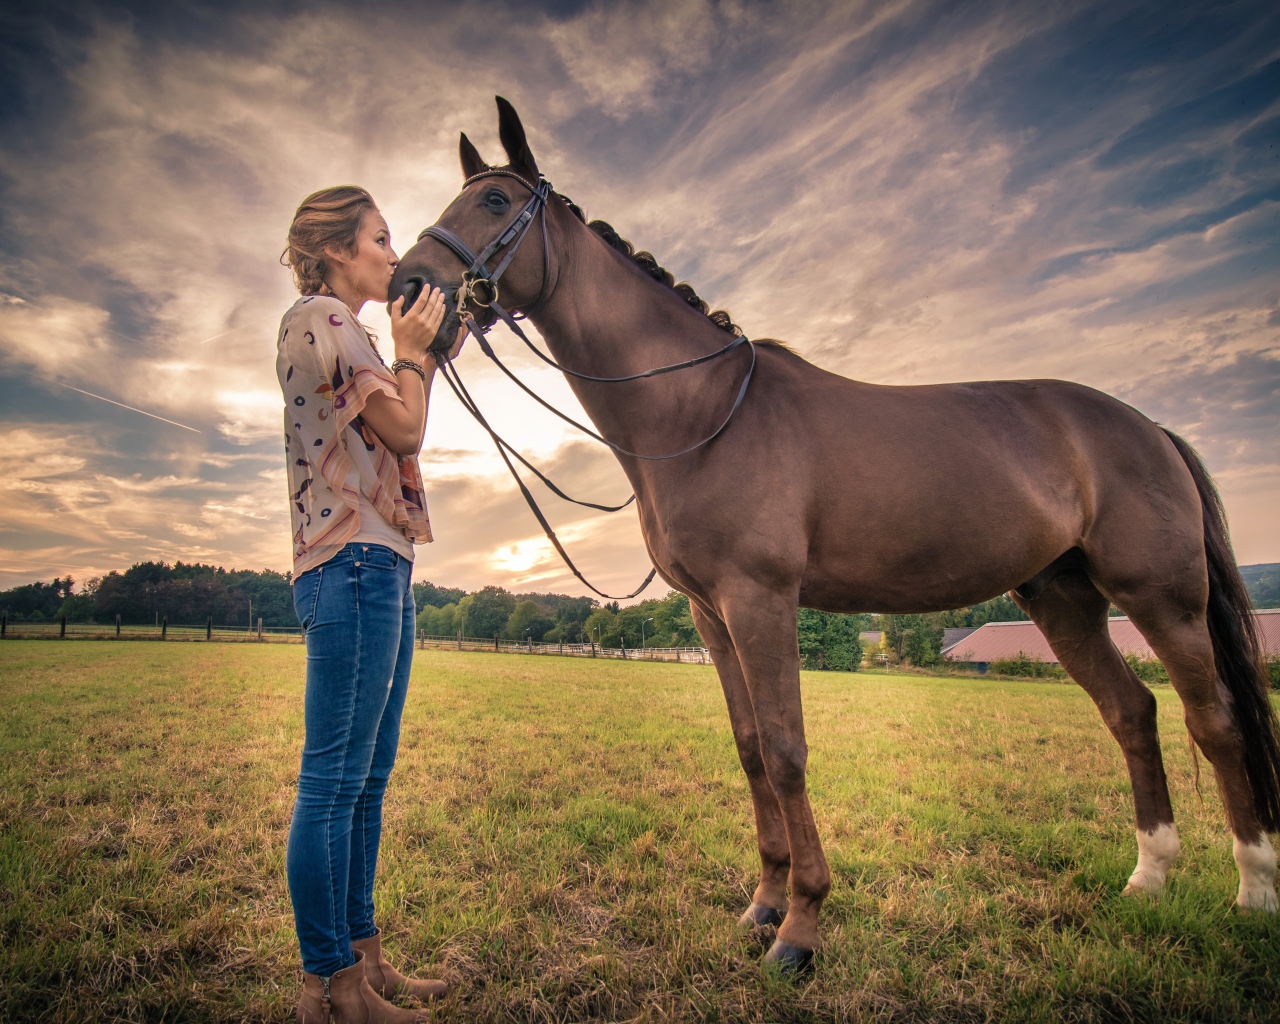 Красивая девушка целует коня под красивым небом